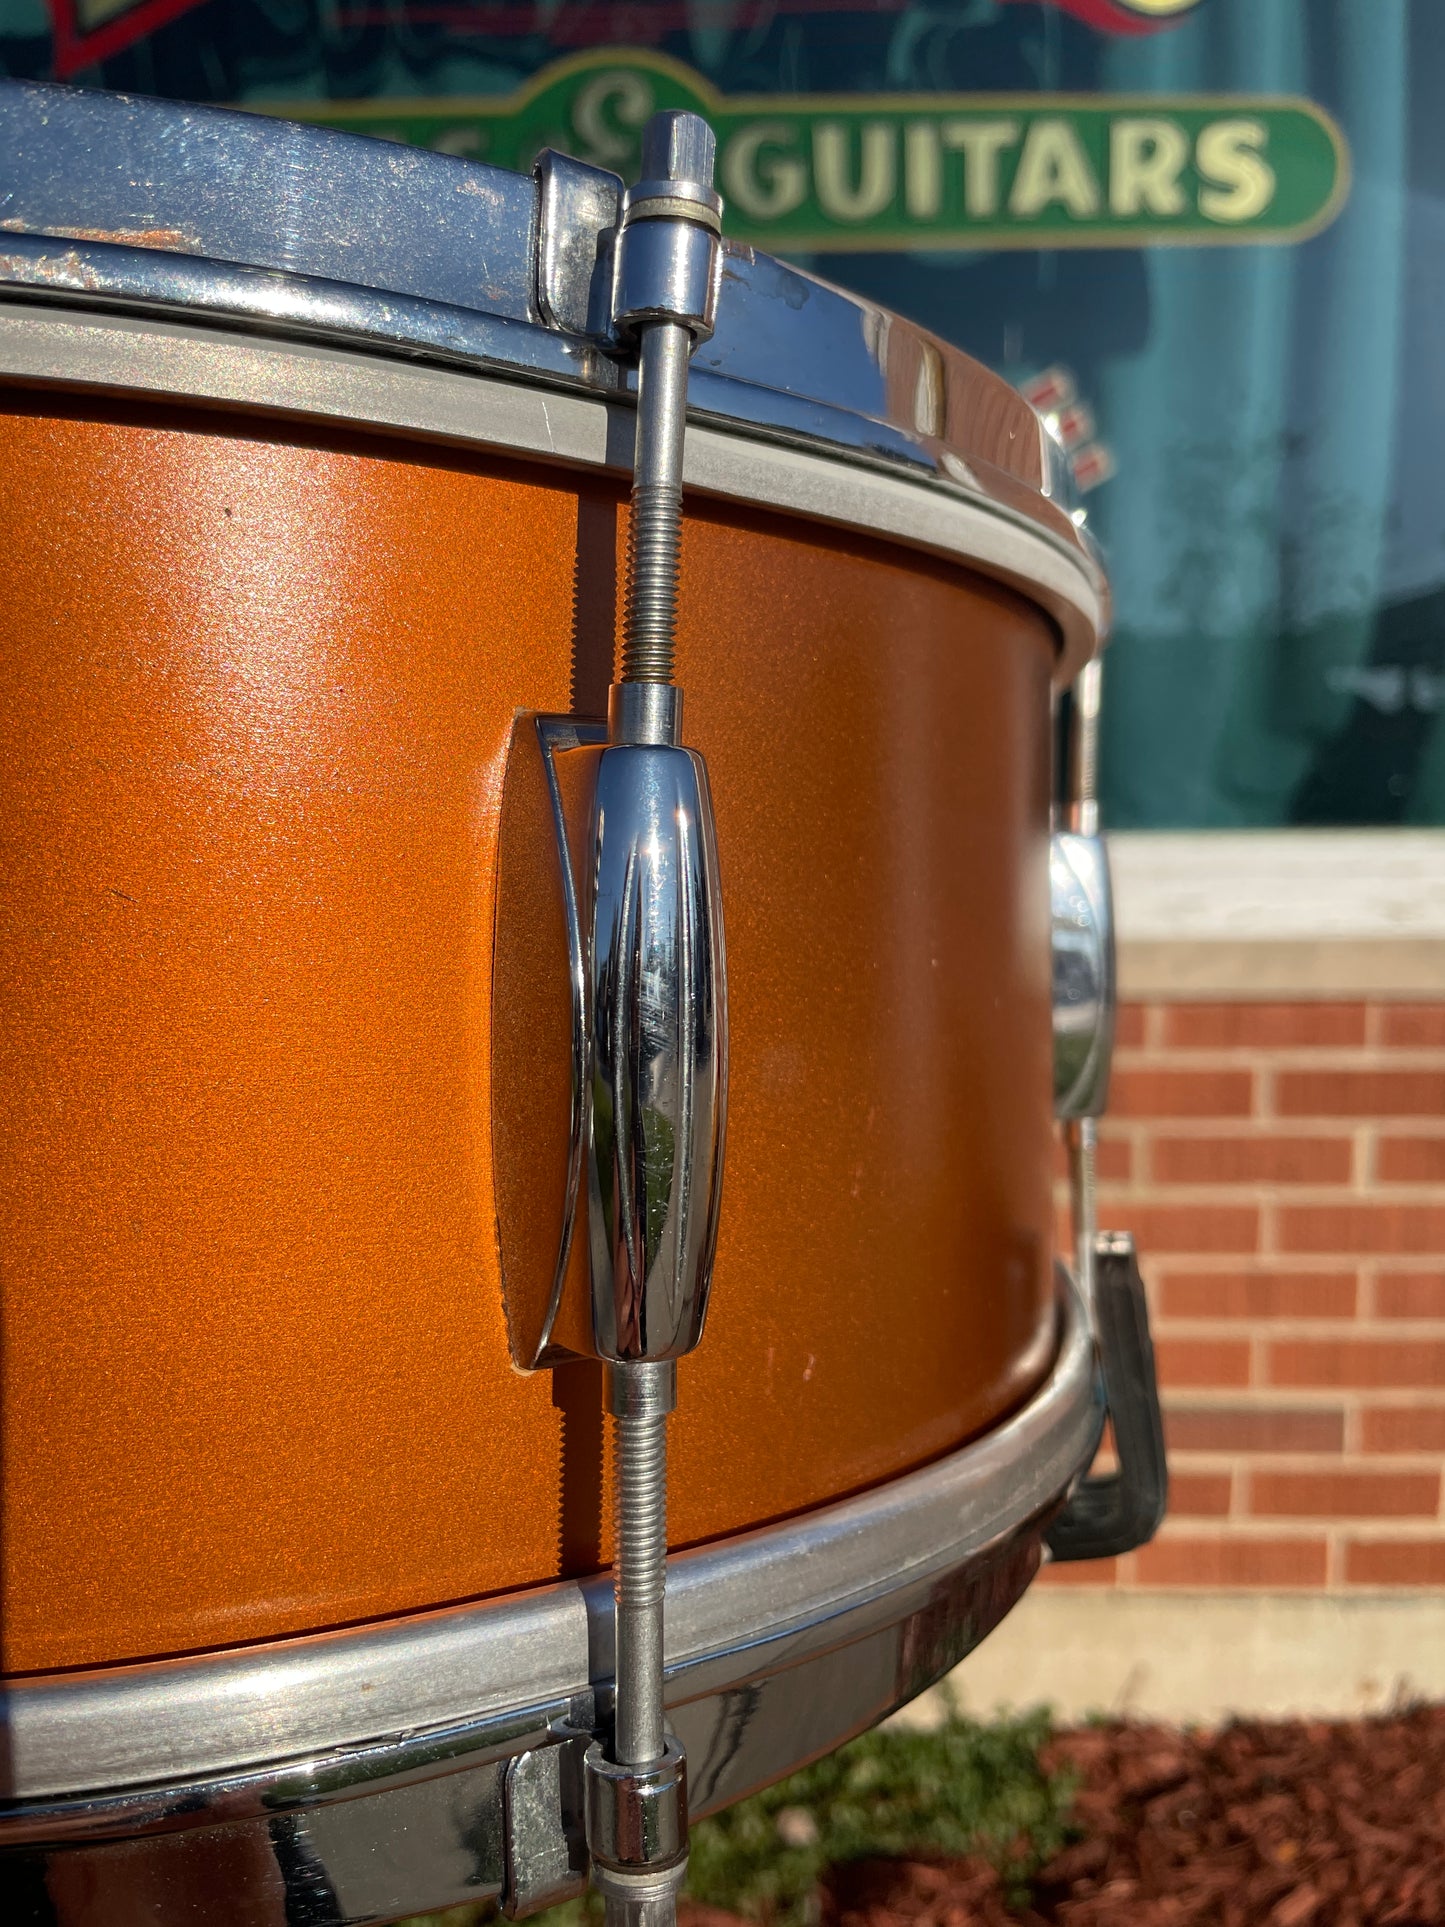 1950s Gretsch 5.5x14 No. X4104 Dixieland Snare Drum Copper Mist Lacquer *Video Demo*